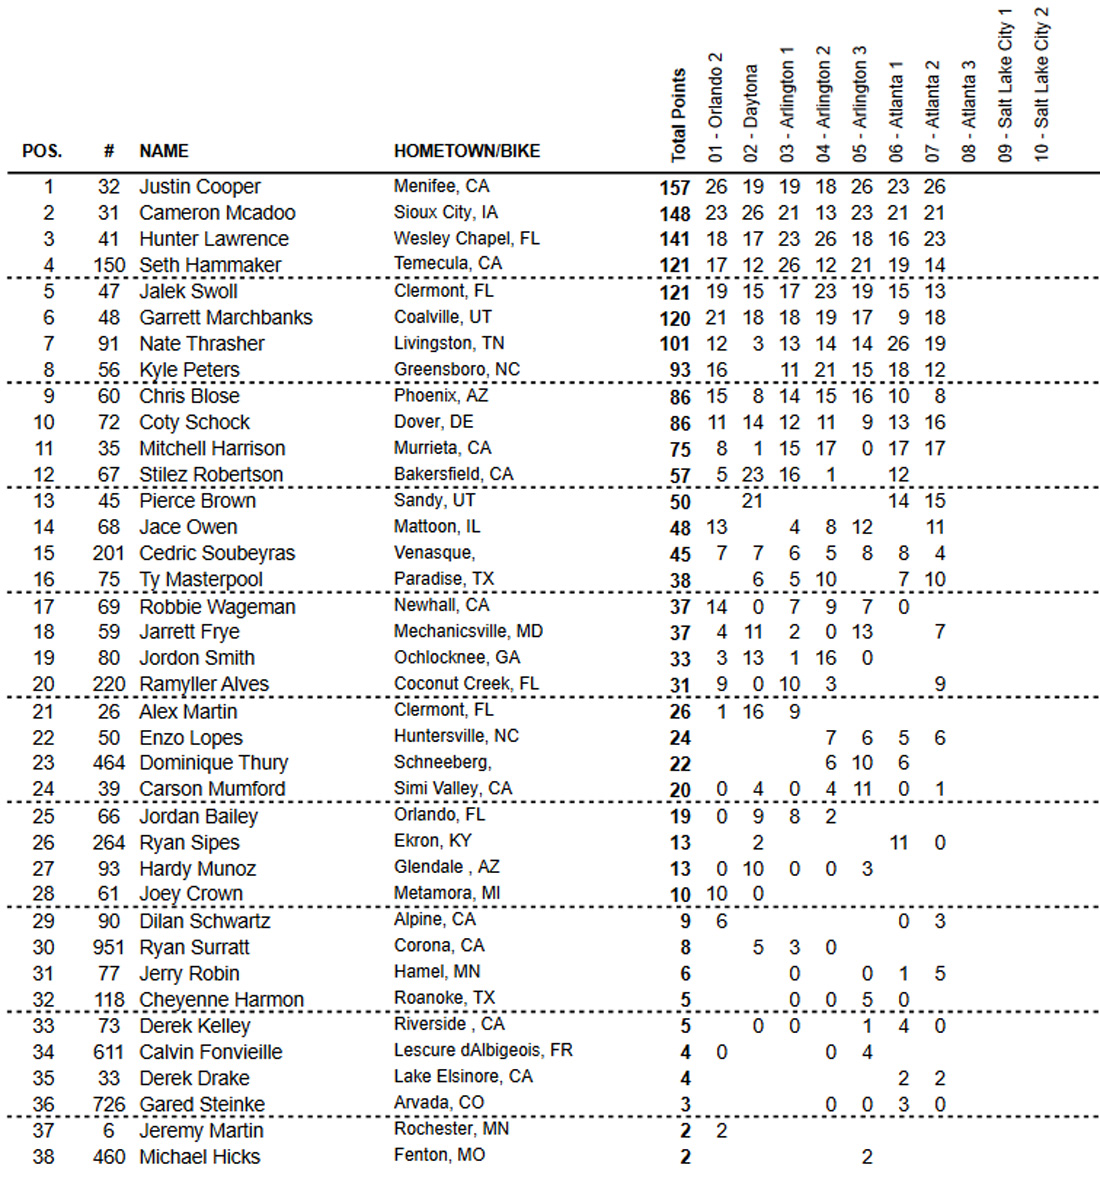 Classificação geral do AMA Supercross 2021 após 14 etapas - categoria 250